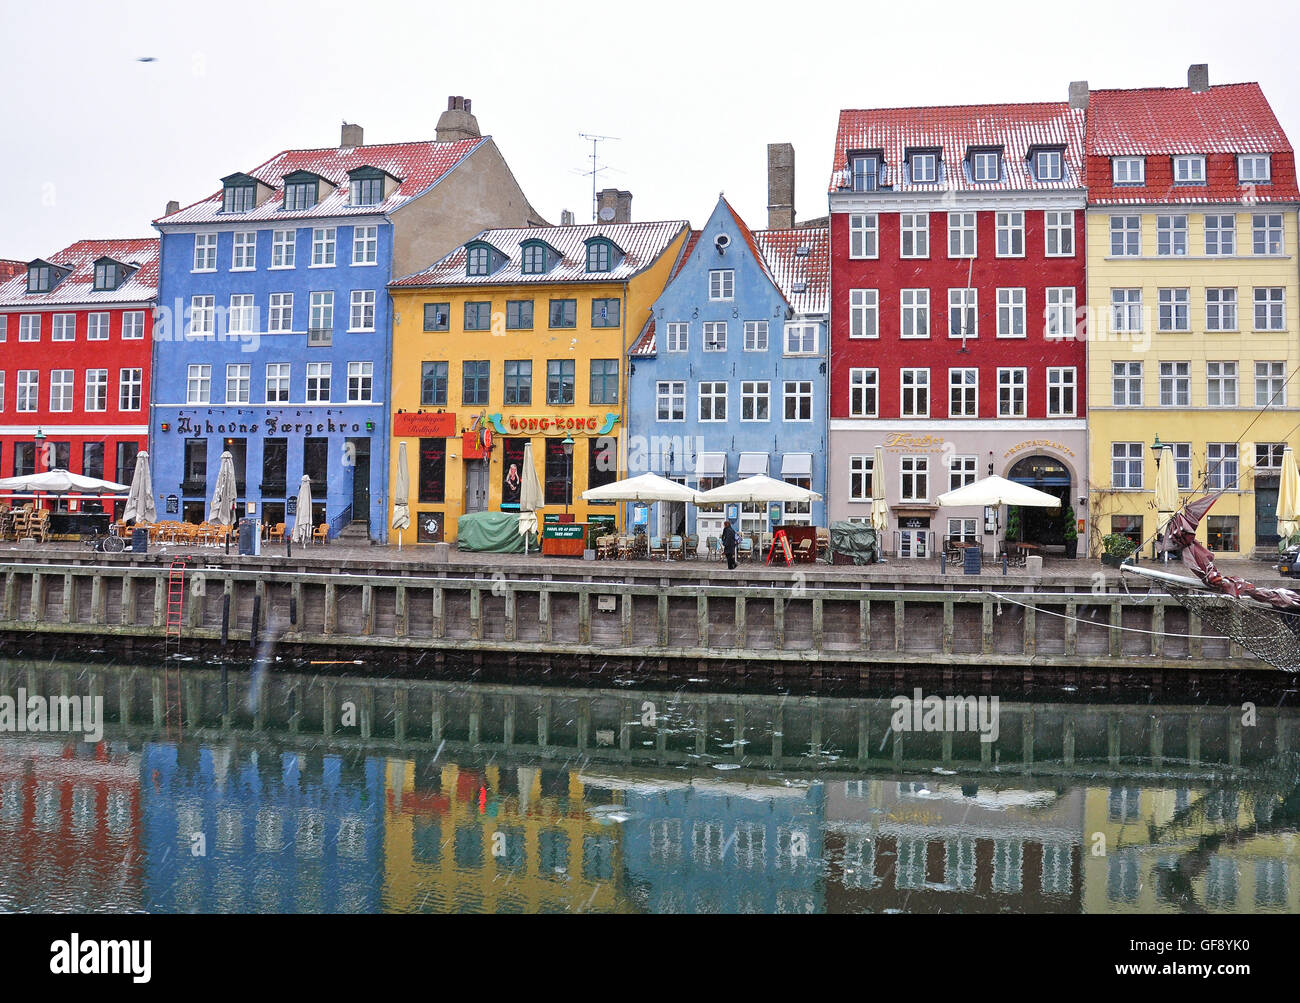 Kopenhagen, Dänemark - 13 März: Multicolor Häuser von Nyhavn Street in der Innenstadt von Kopenhagen am 13. März 2013. Stockfoto